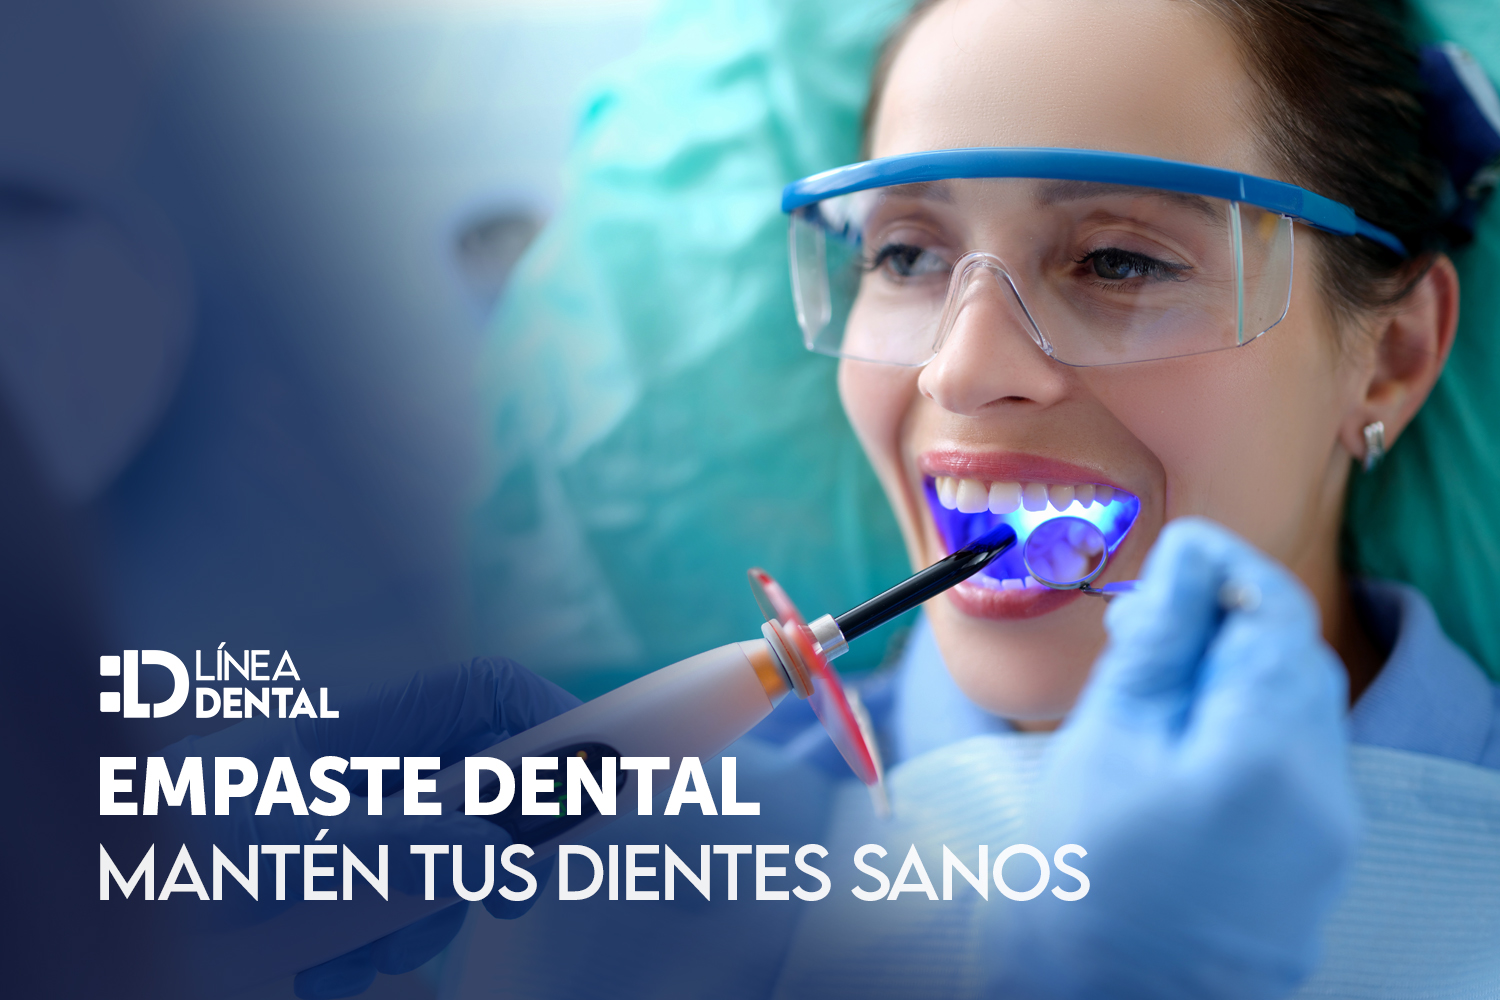 empaste-dental-dentista-odontologo-linea-dental-ciudad-real-miguelturra